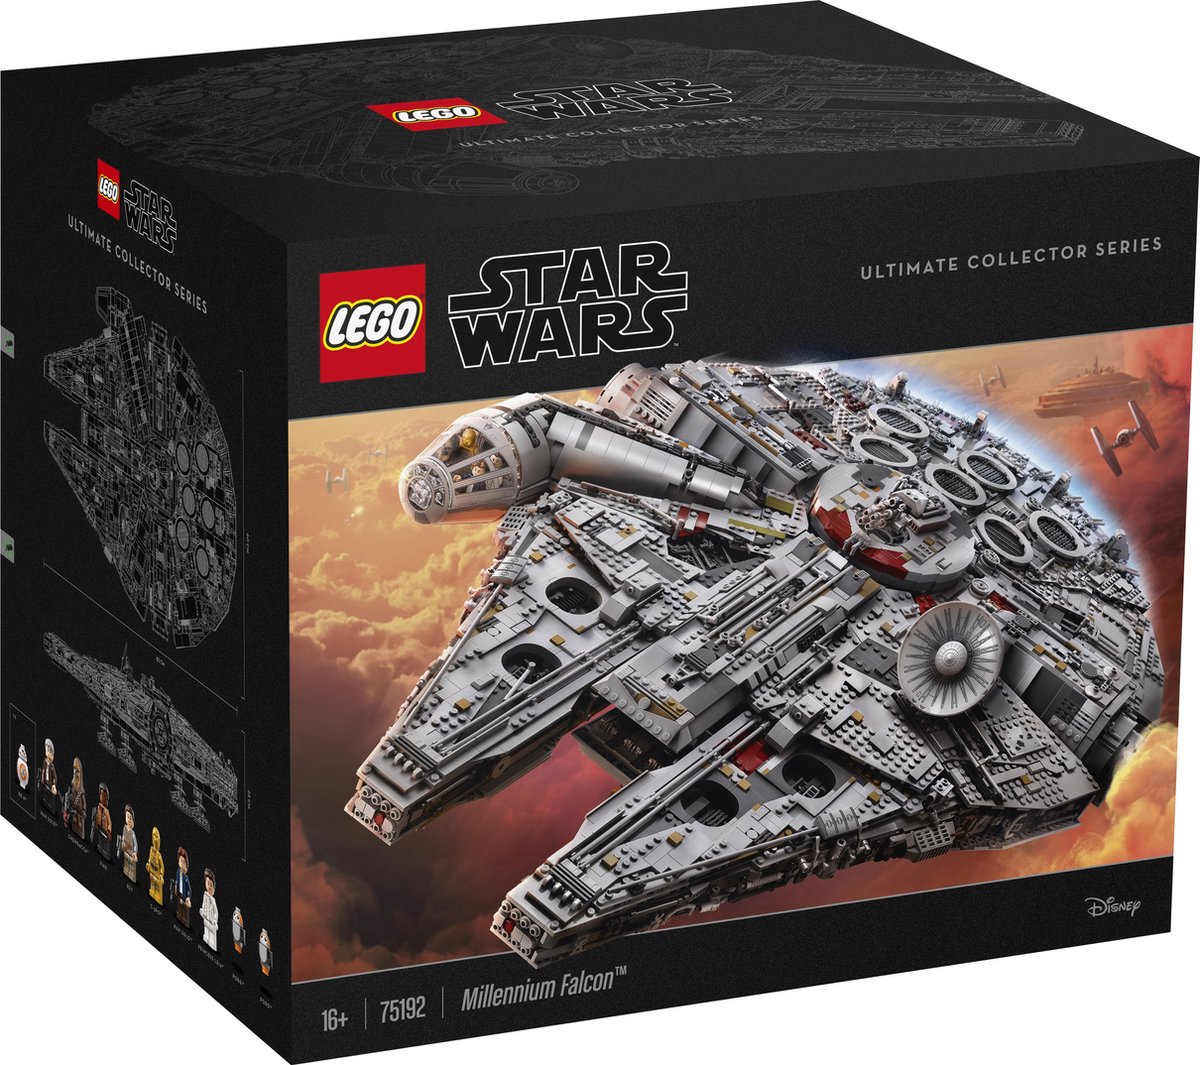 LEGO Star Wars UCS Falcon - 75192 aanbiedingen | actuele- aanbiedingen.nl